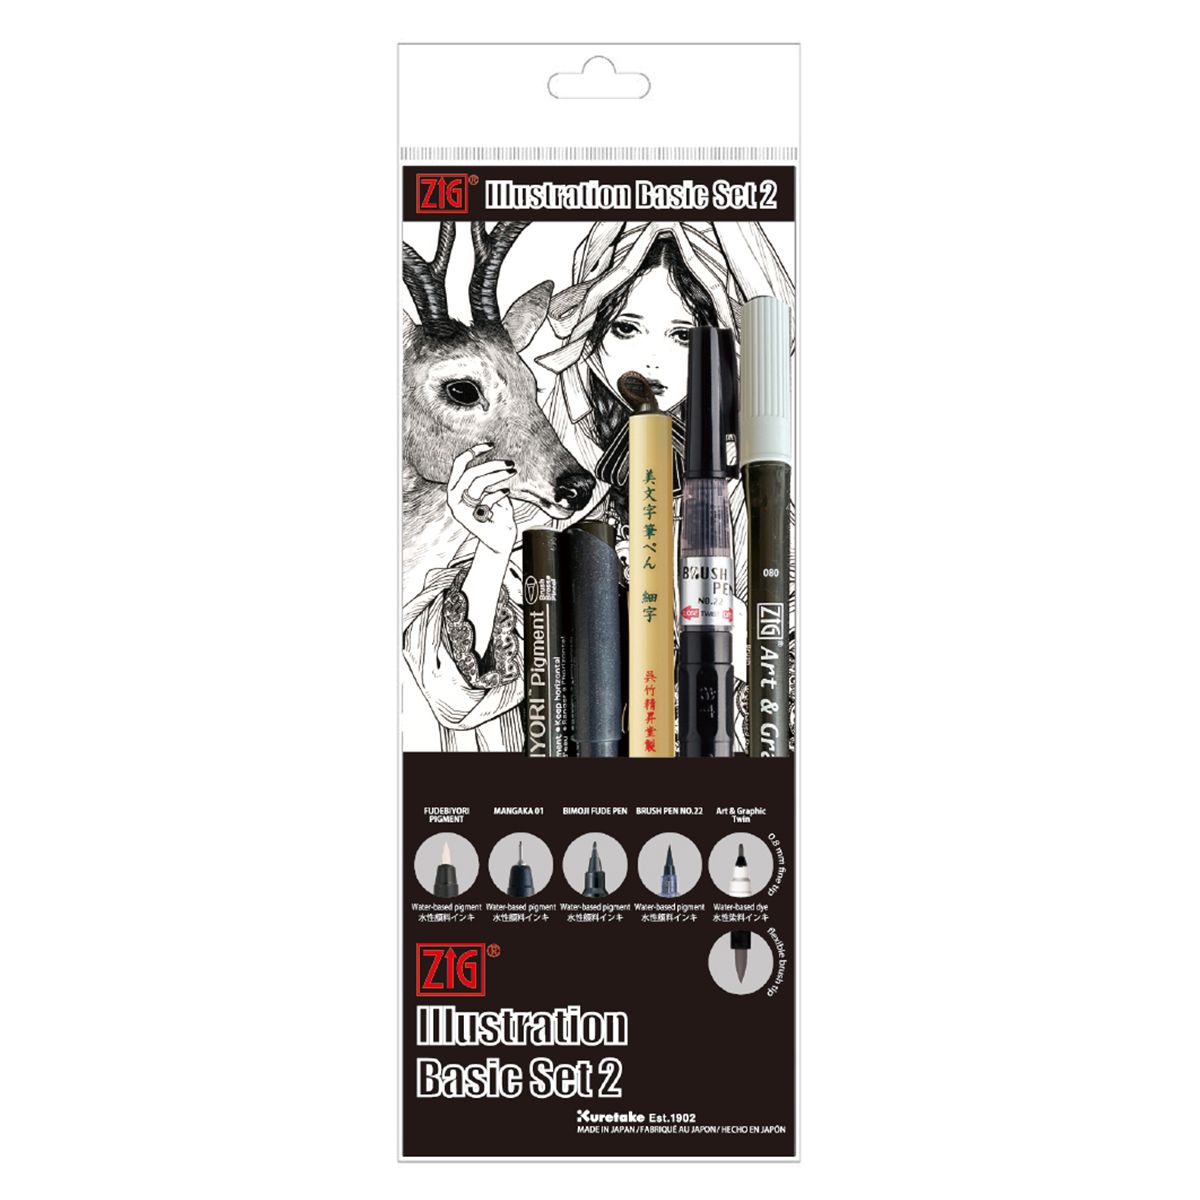 Kuretake Japanese Manga Pen Black - pack of 3 pens with tips of